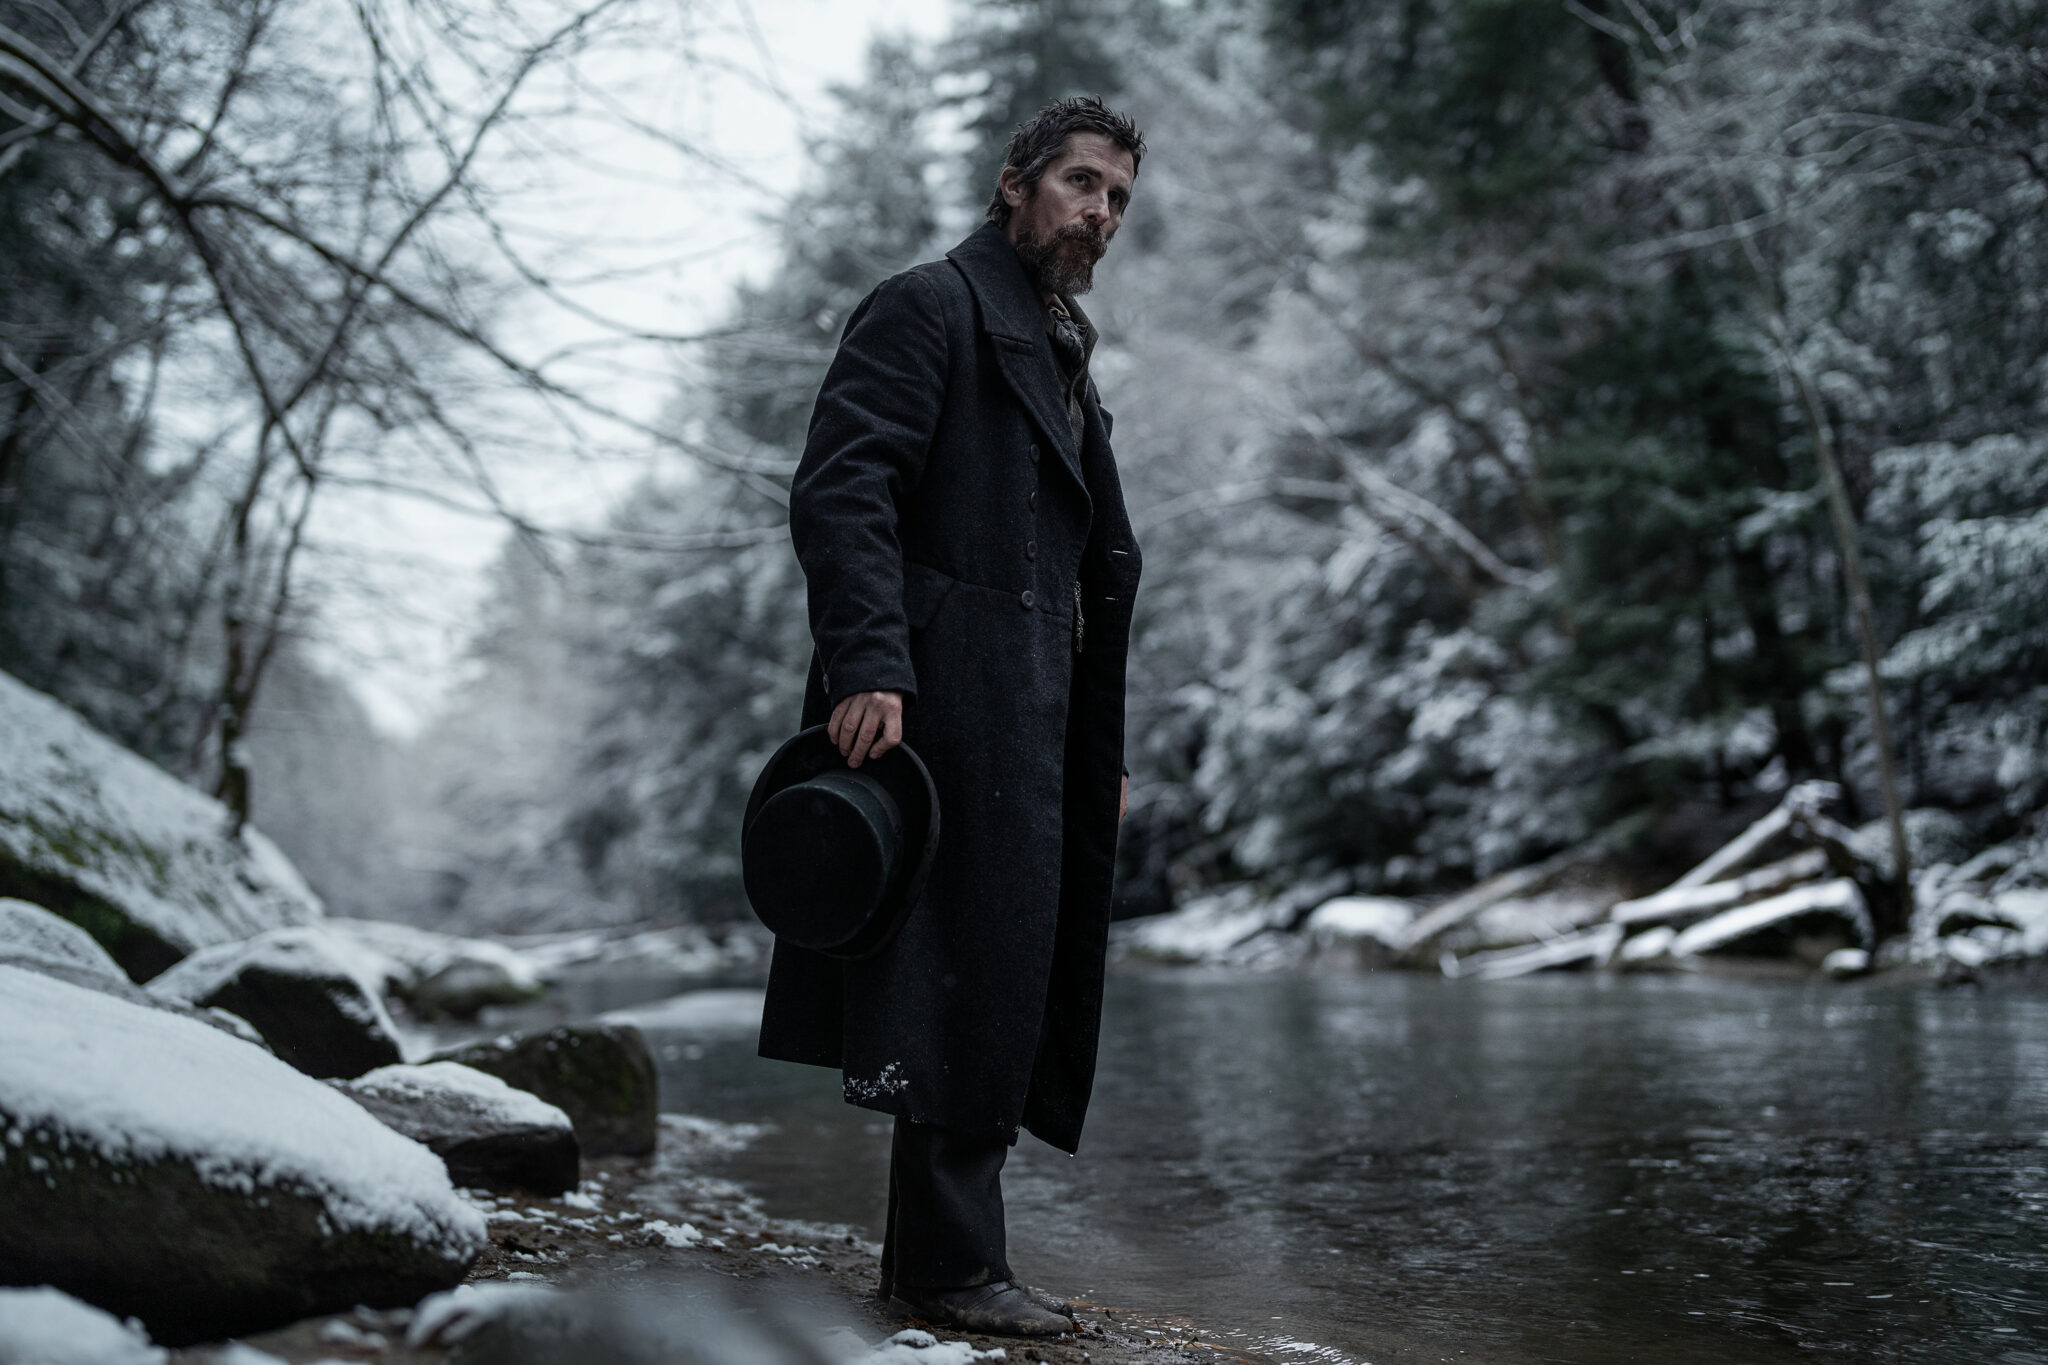 Christian Bale als Augustus Landor an einem winterlichen Fluss stehend mit schwarzem Mantel und Zylinder in der rechten Hand.